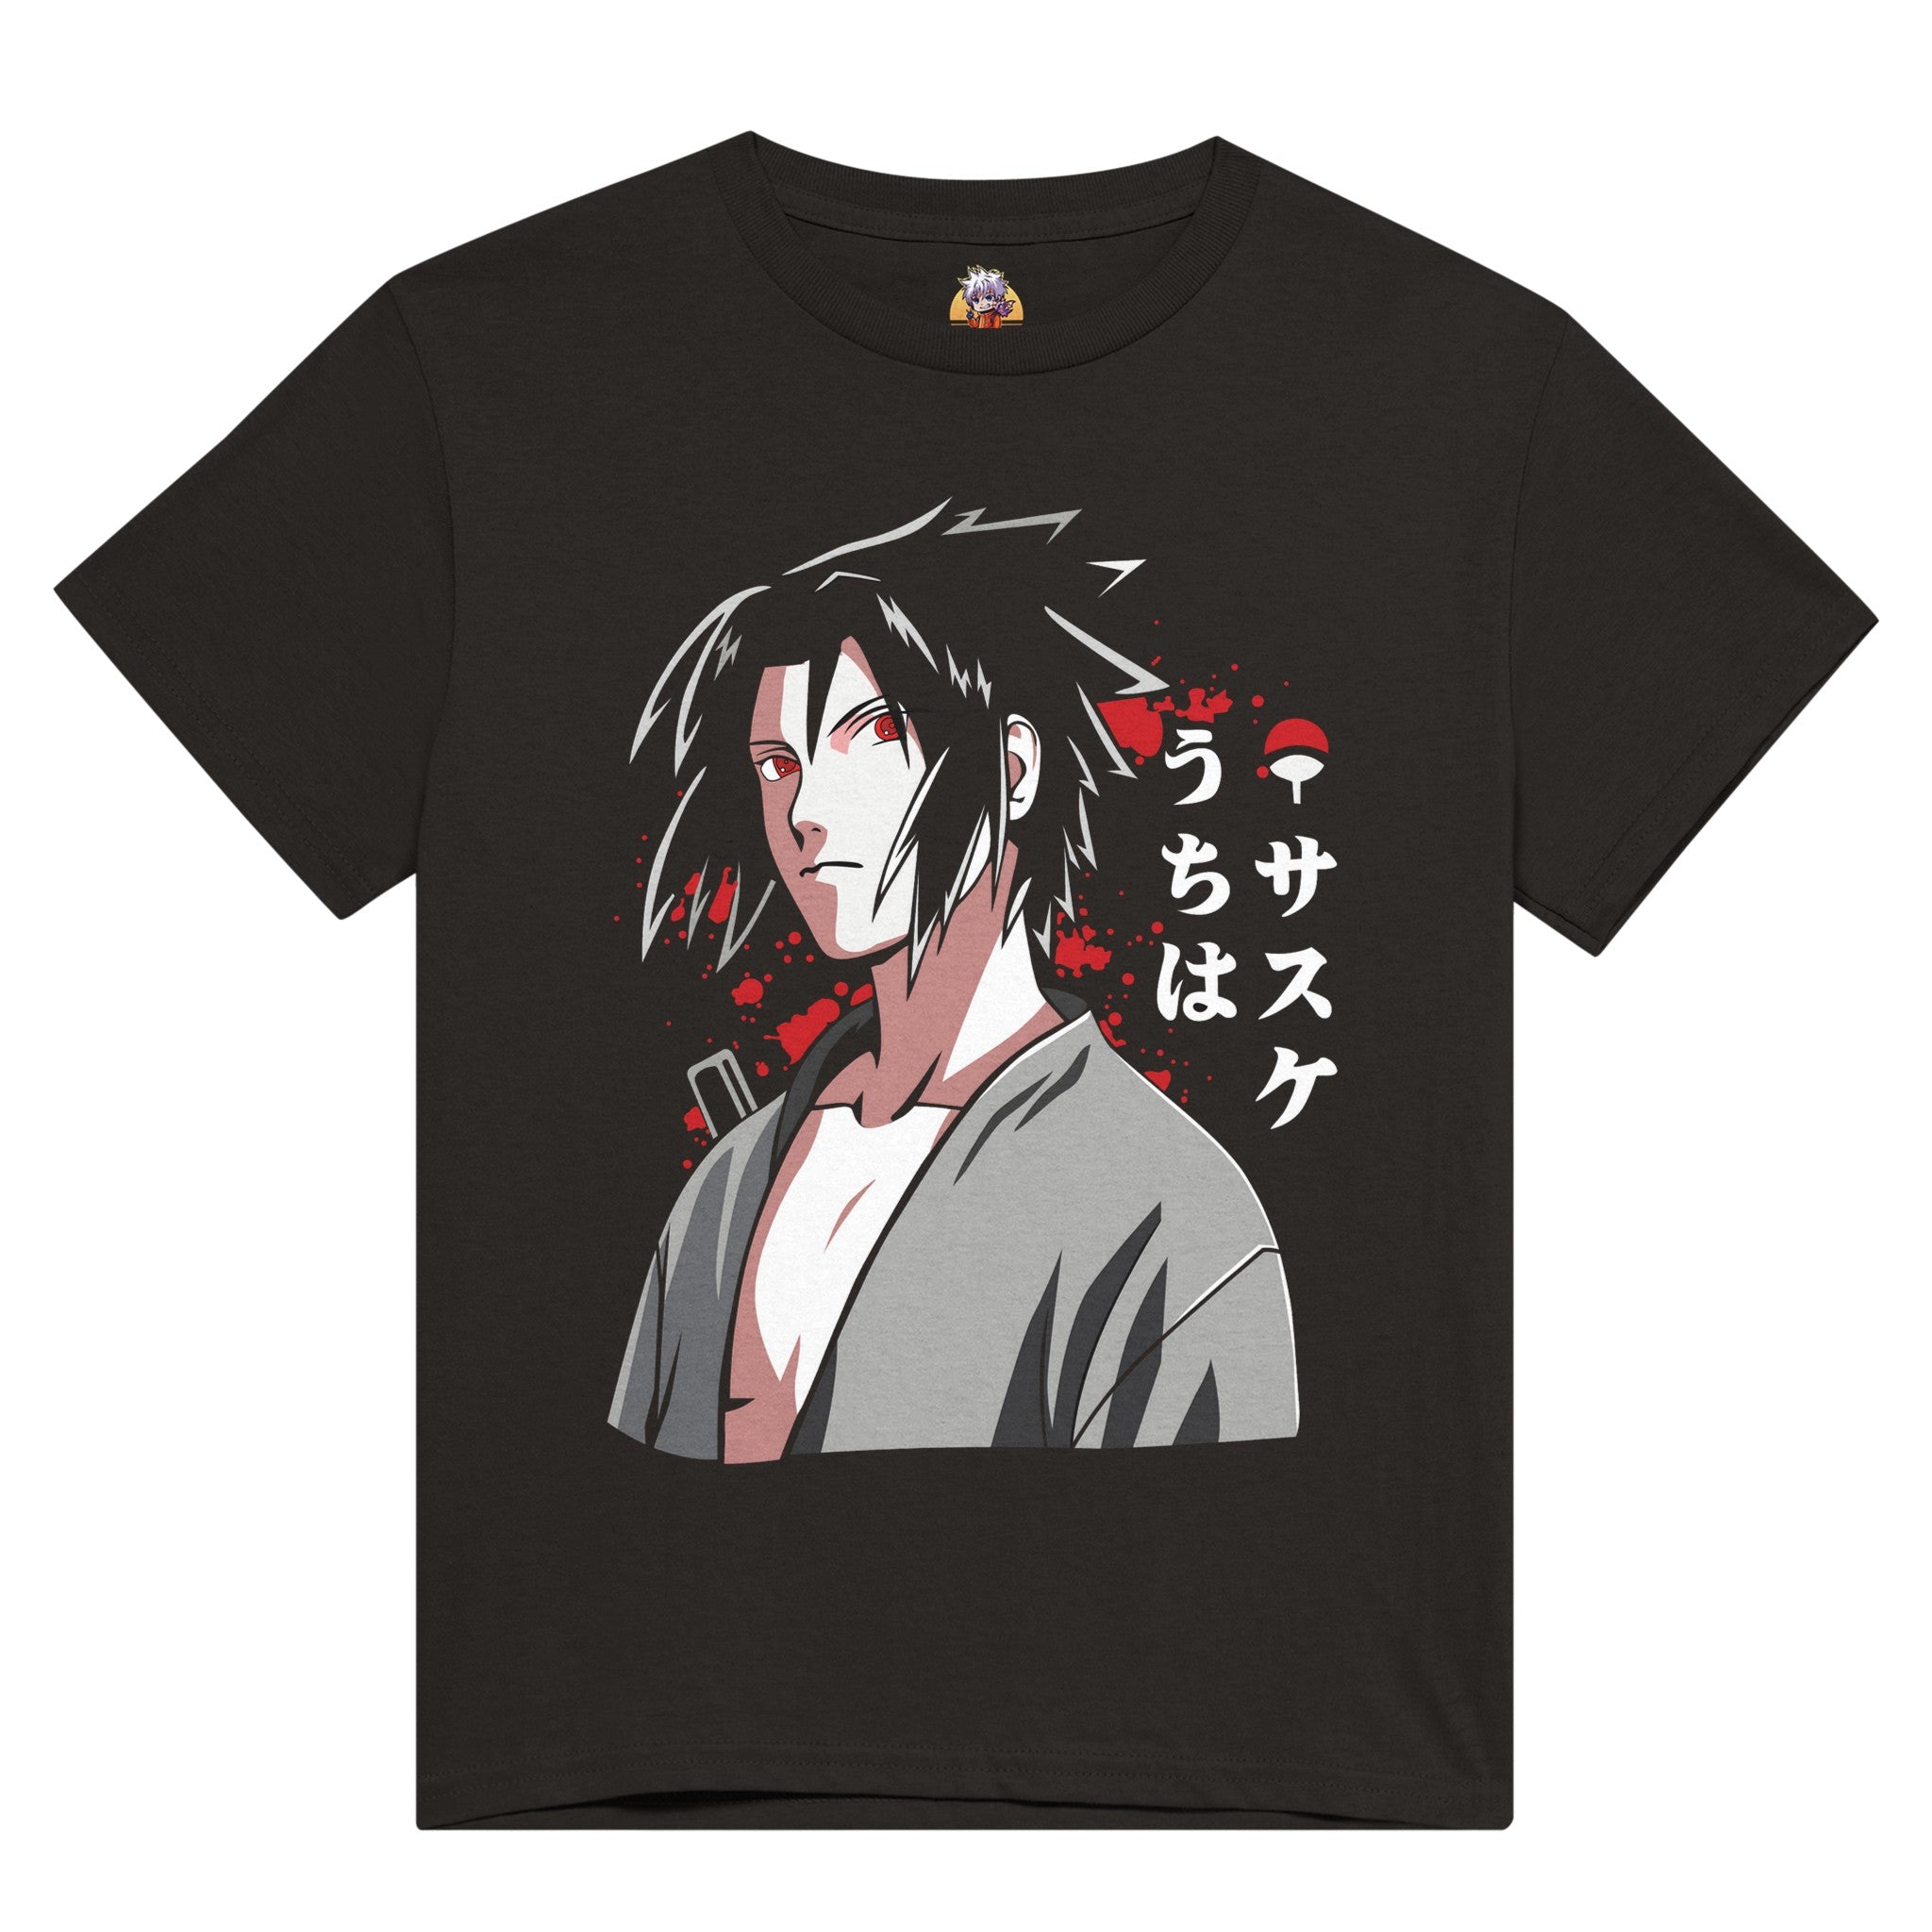 shop and buy sasuke uchiha anime t-shirt